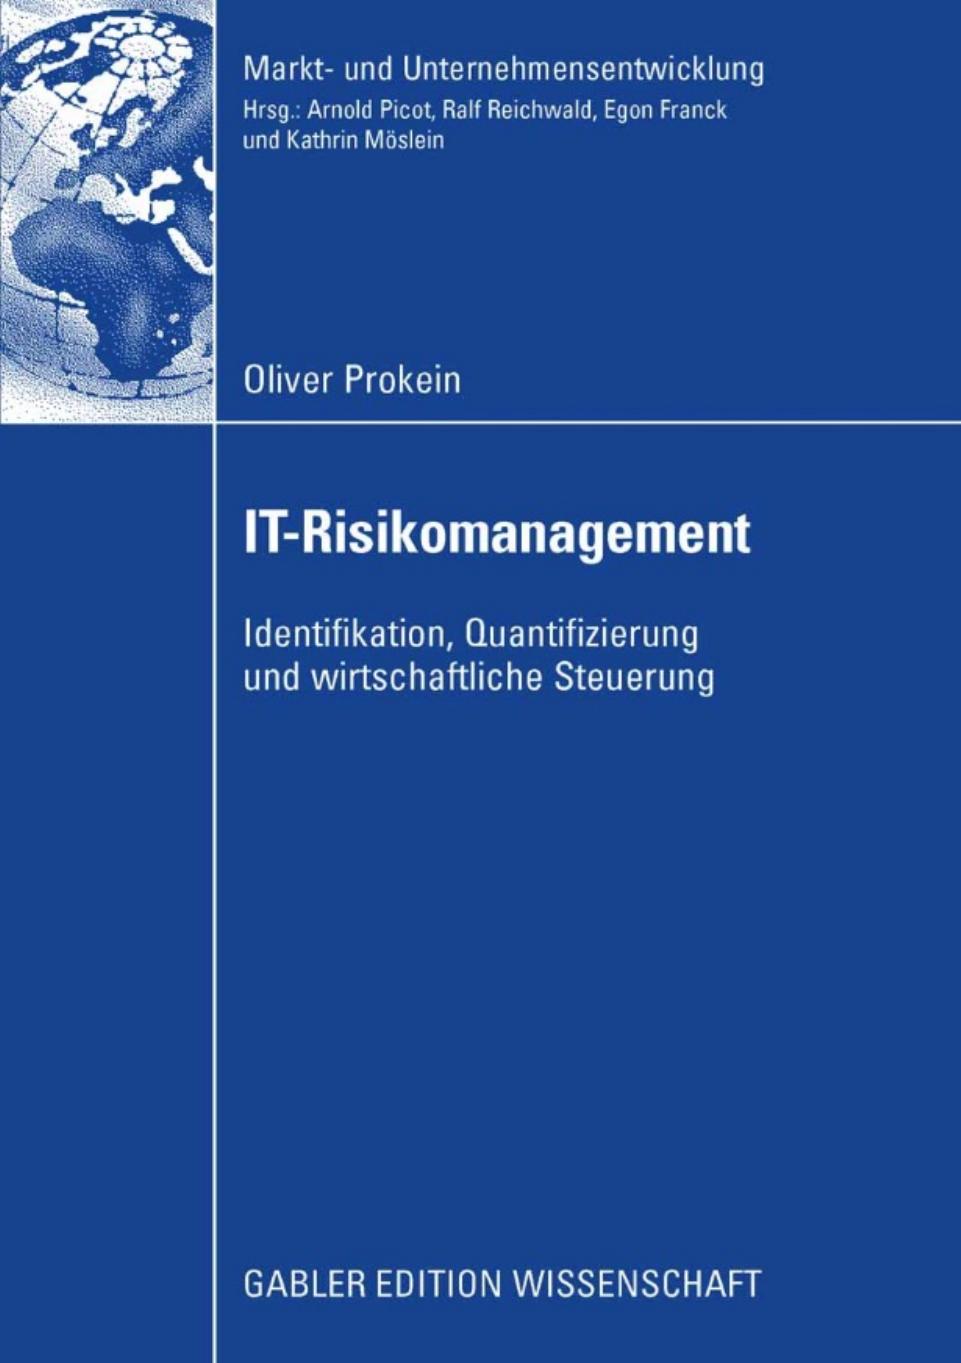 IT-Risikomanagement: Identifikation, Quantifizierung und wirtschaftliche Steuerung